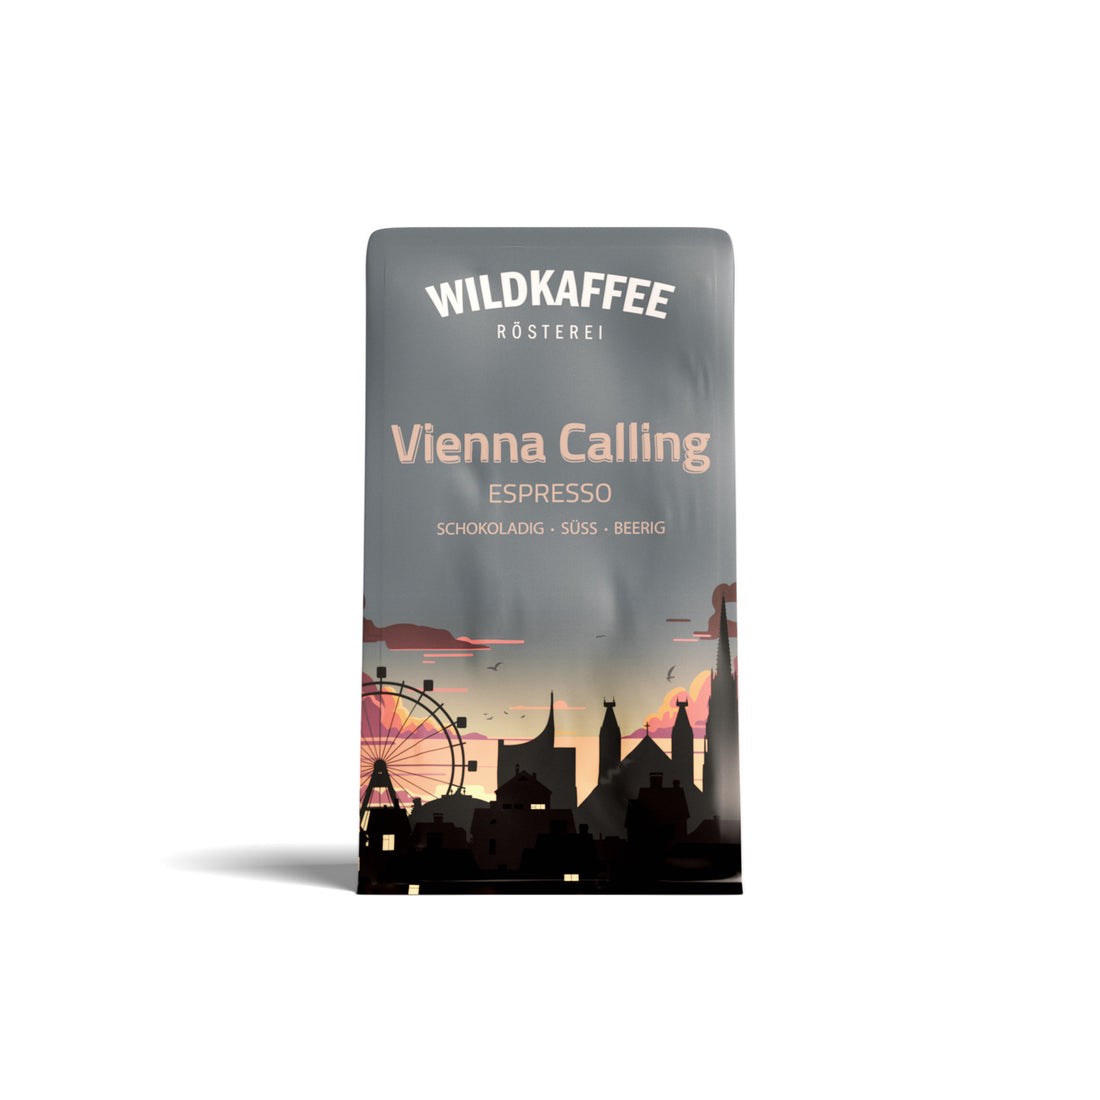 vienna-calling-espresso-wildkaffee-oesterreich